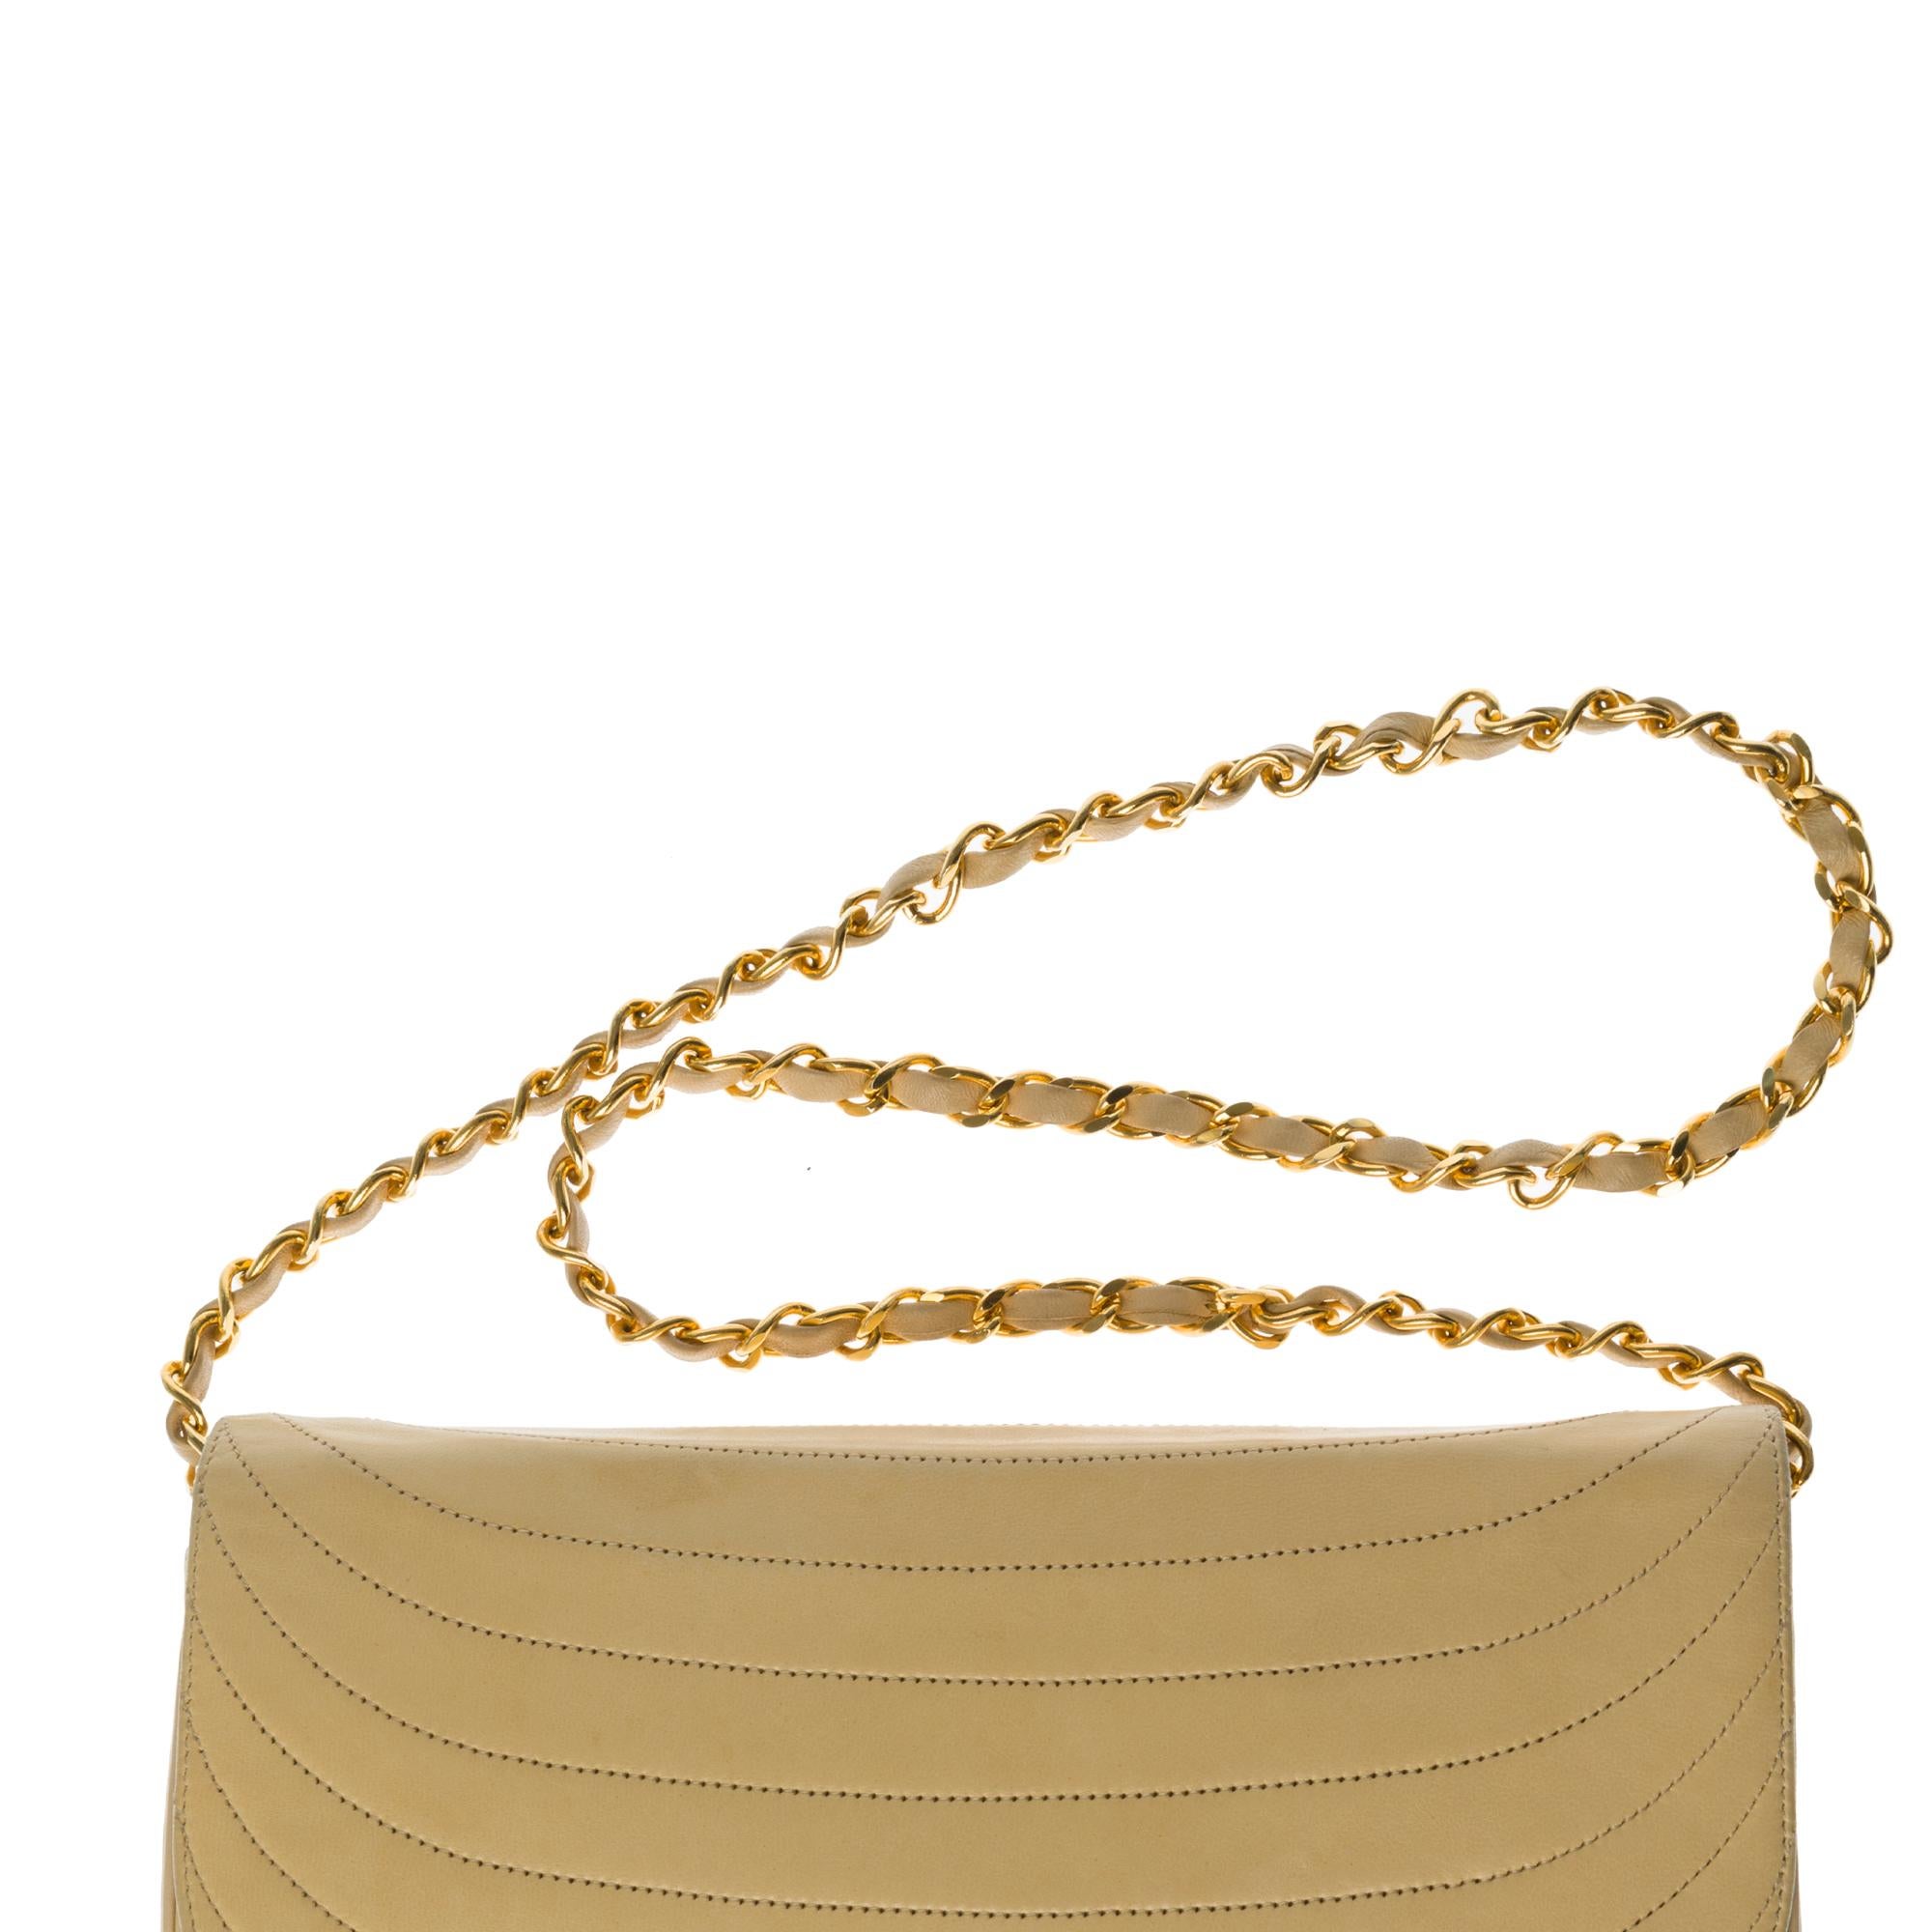 Women's Chanel vintage half moon shoulder bag in beige quilted leather, Gold hardware 